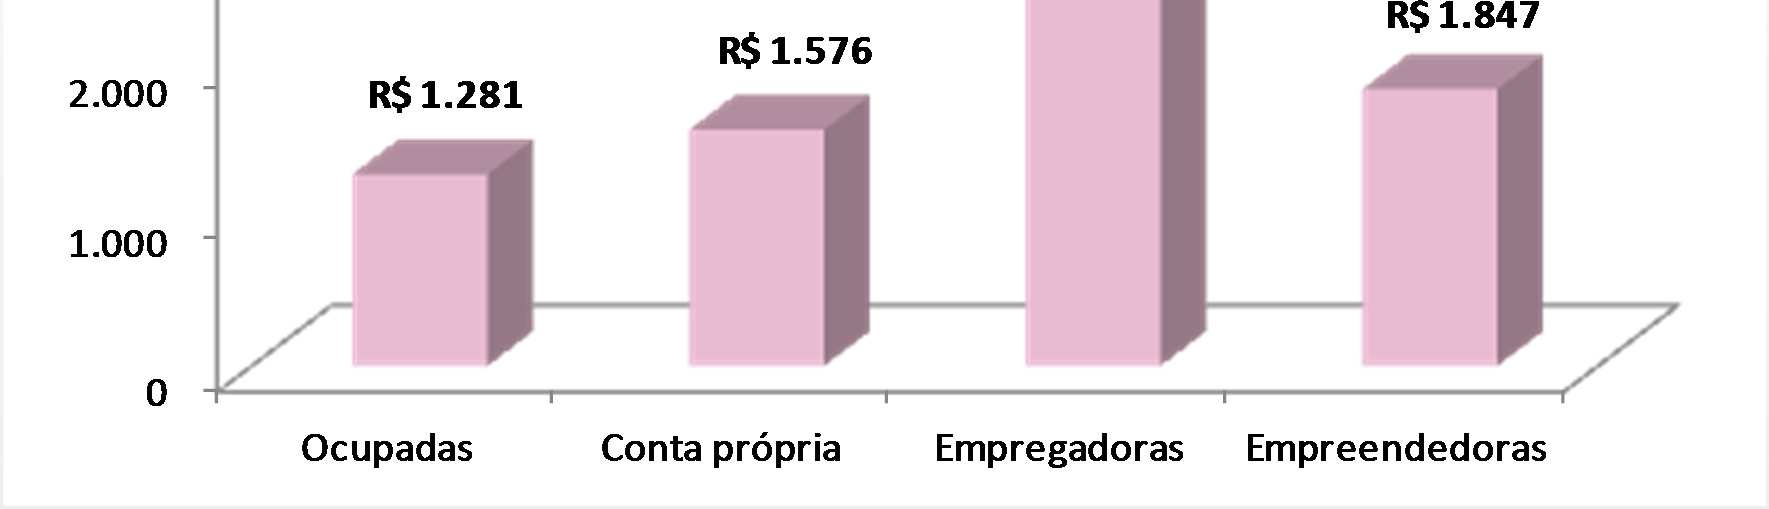 Rendimento médio das mulheres ocupadas por tipo de ocupação Estado de São Paulo Fonte: Elaborado pelo